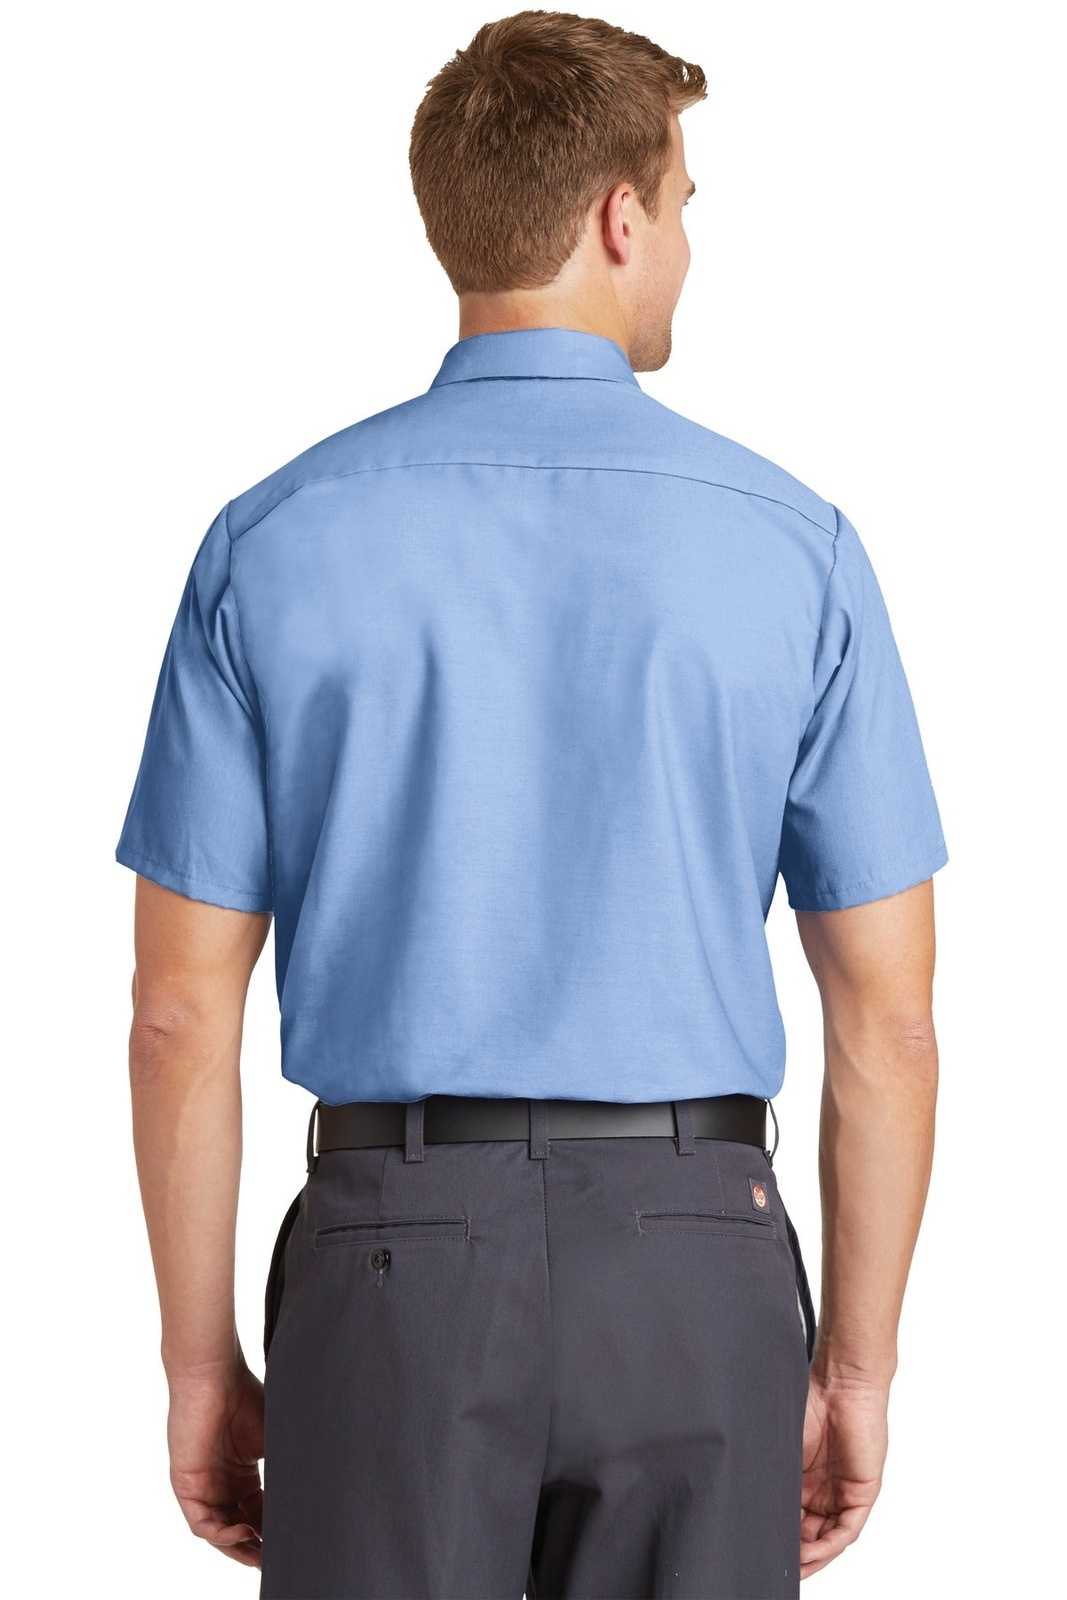 Red Kap SP24 Short Sleeve Industrial Work Shirt - Light Blue - HIT a Double - 2